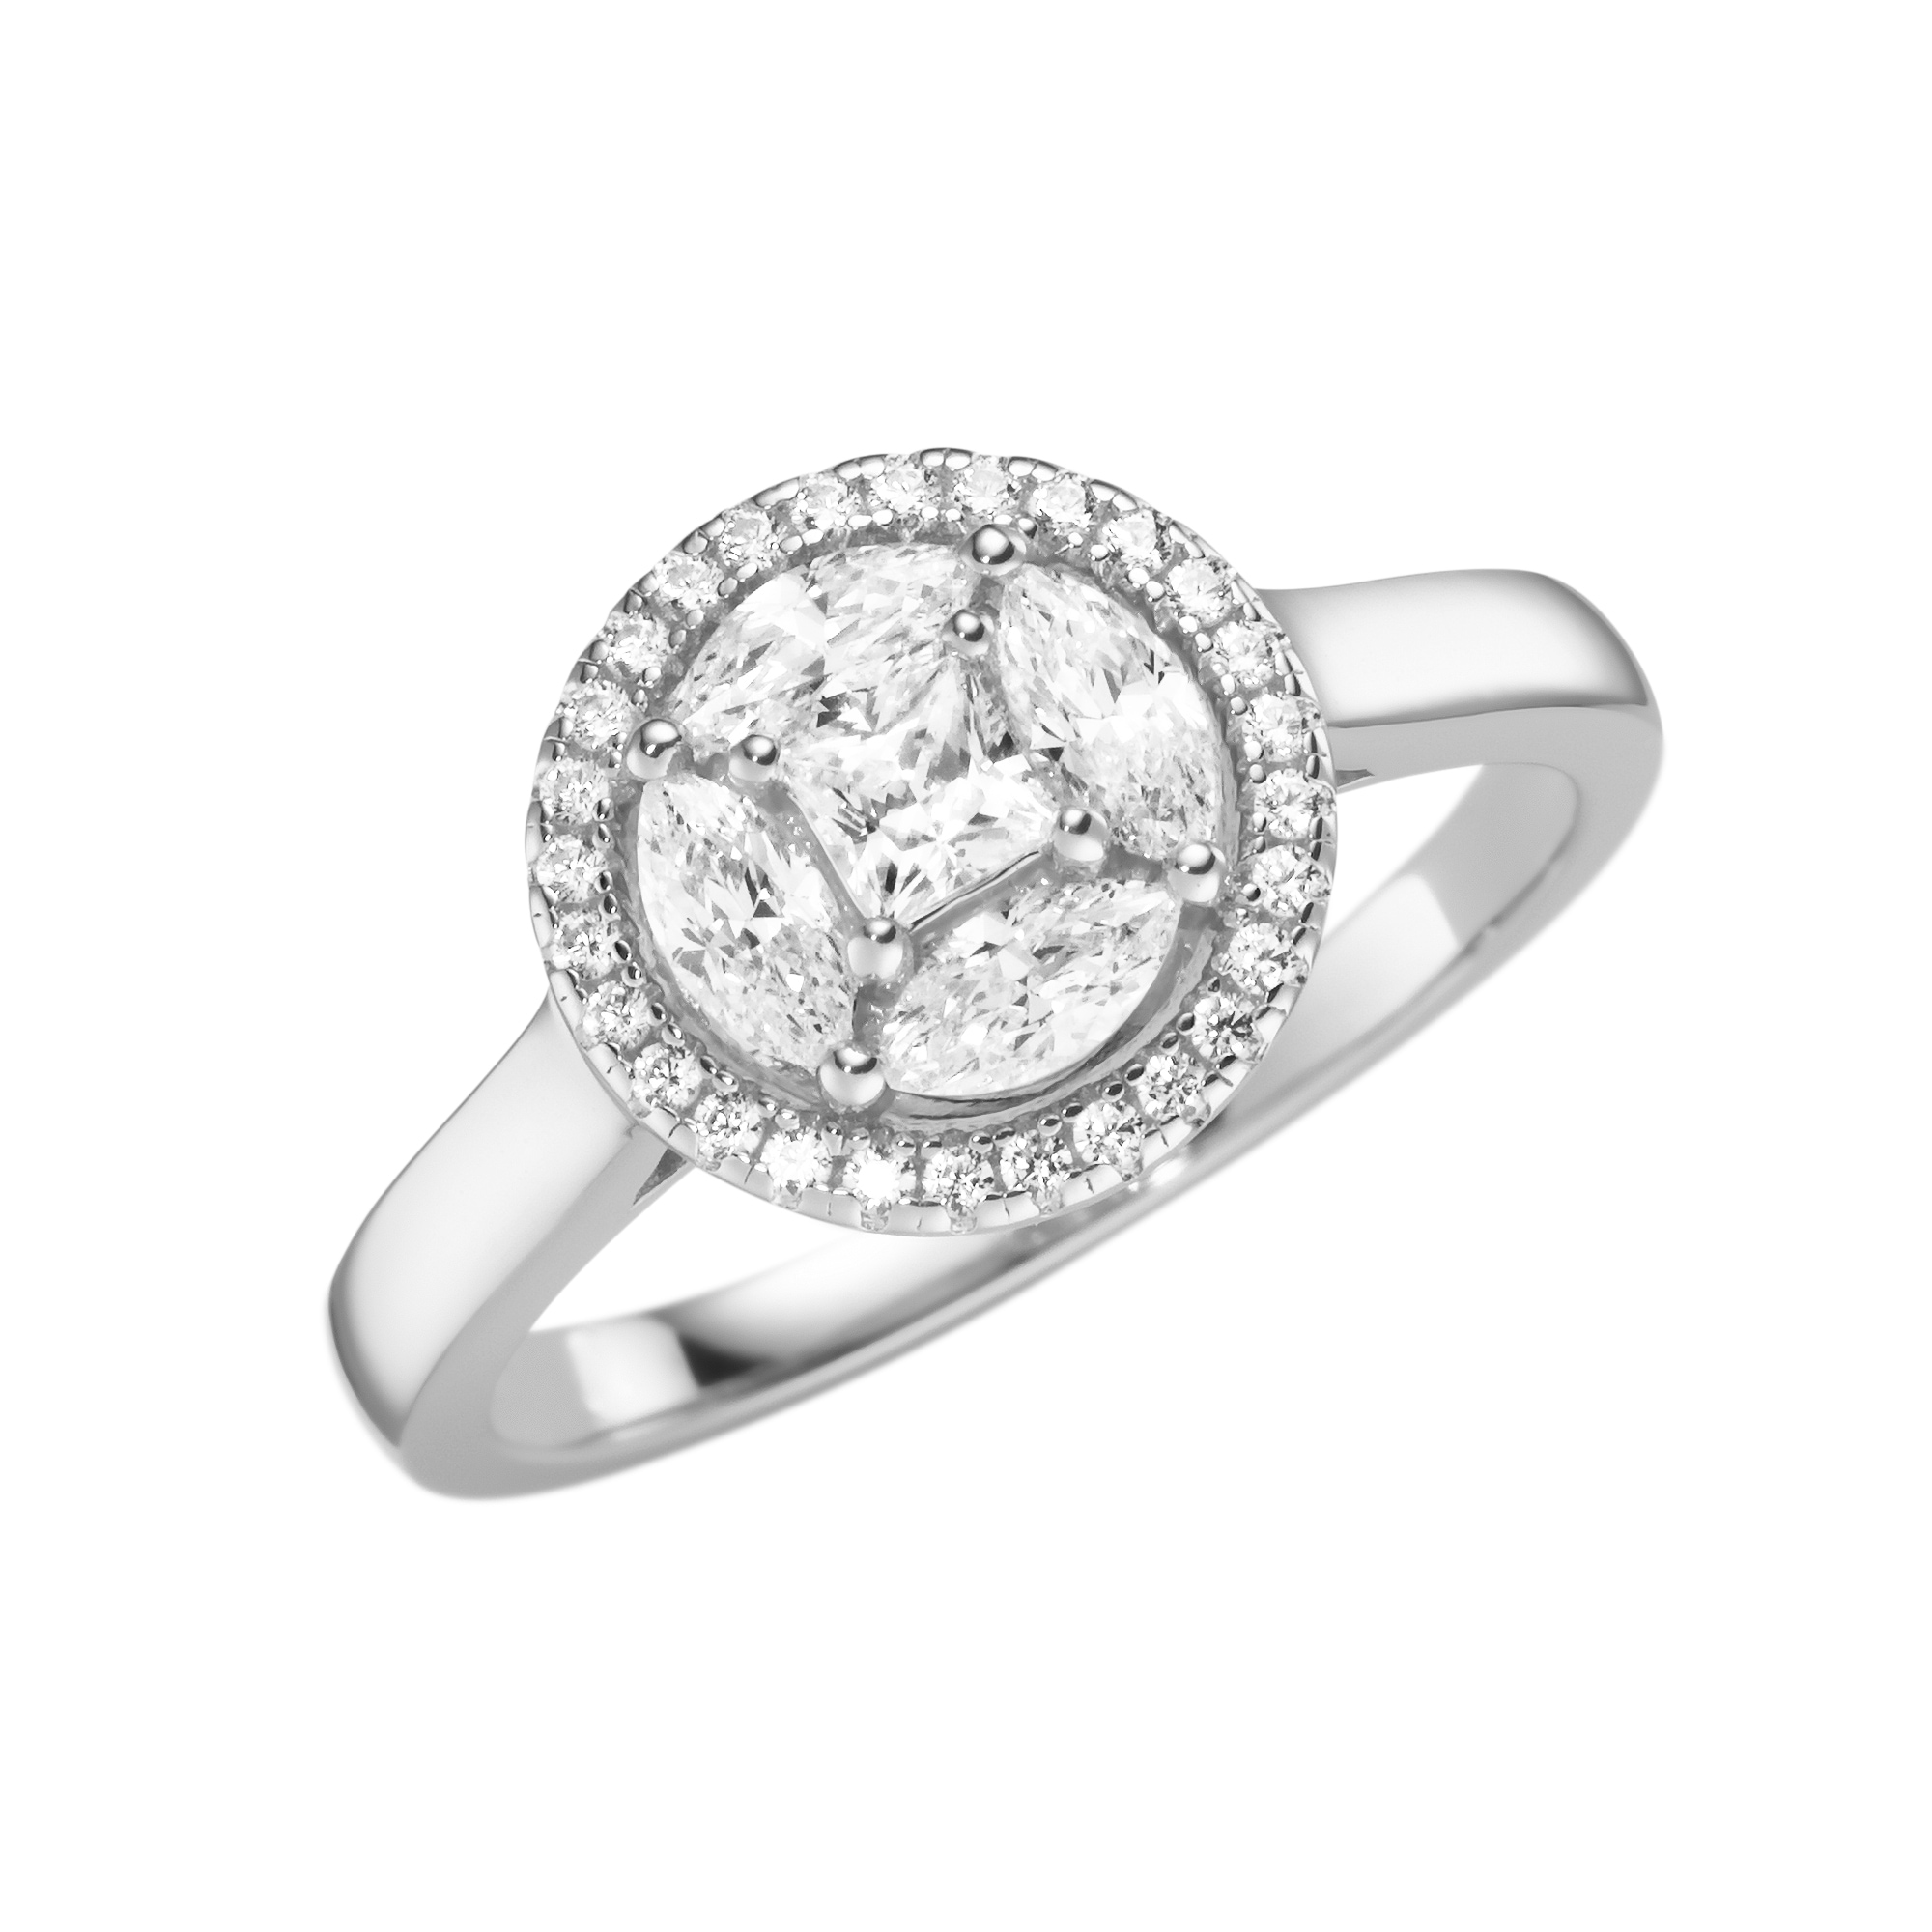 Silberring »Ring mit weißen Zirkonia Steinen, Silber 925«